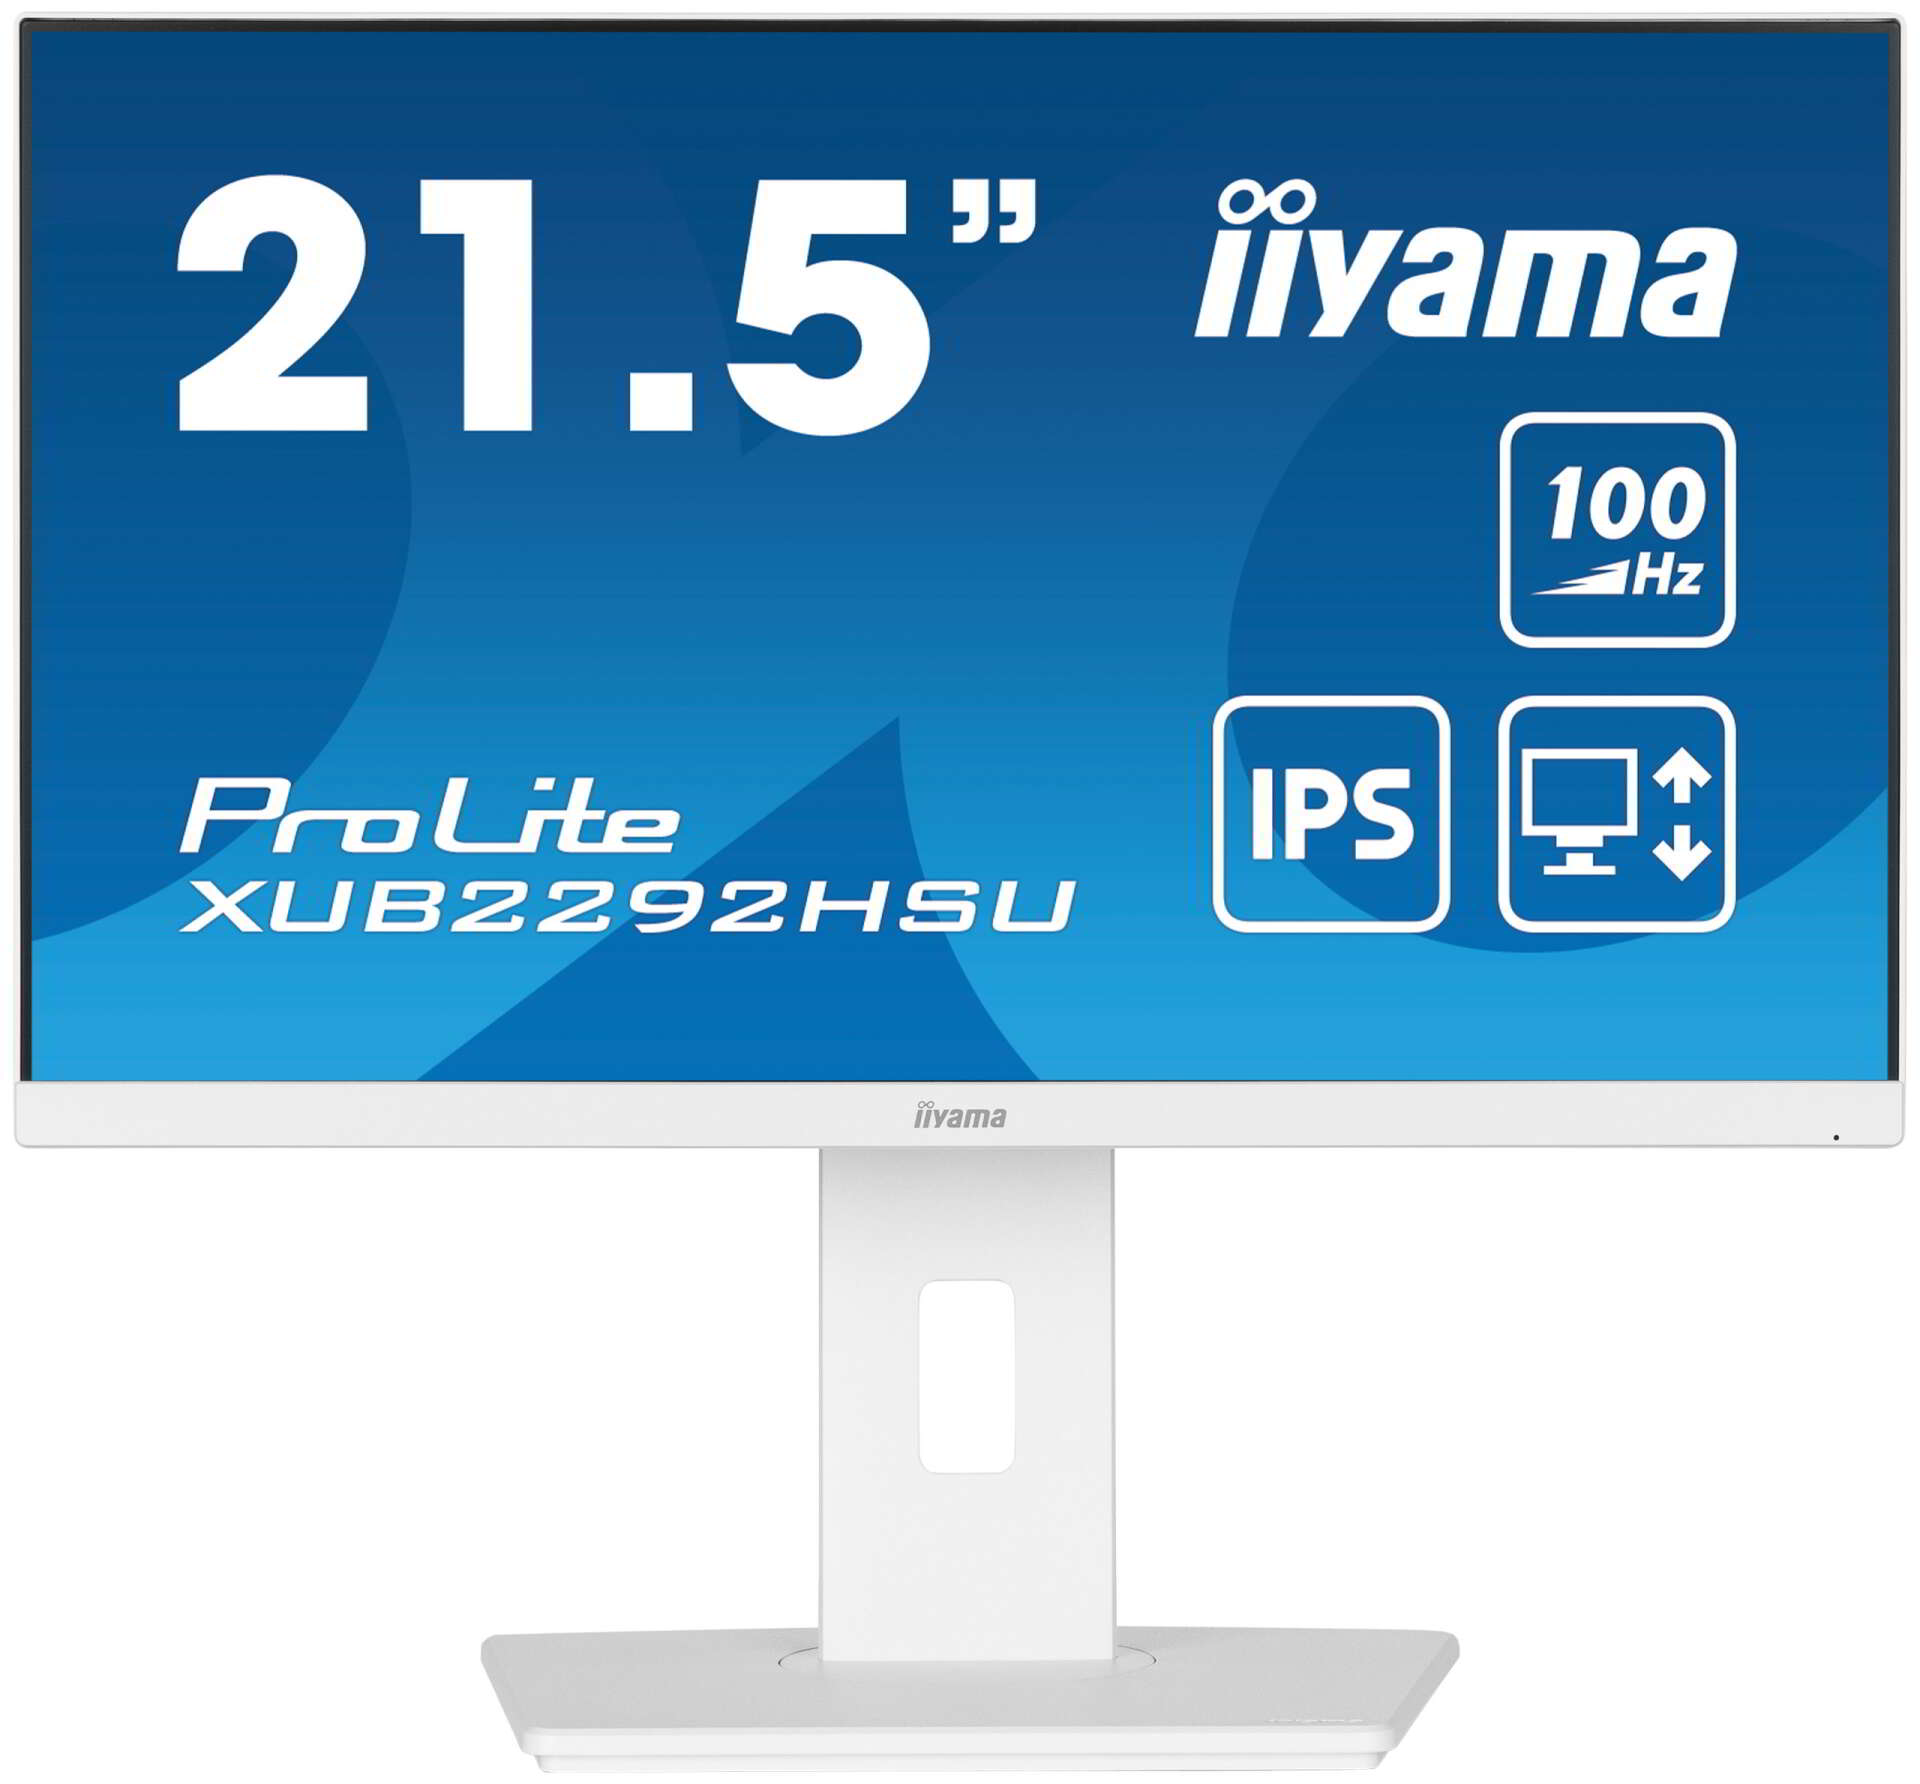 Iiyama 21.5" prolite xub2292hsu monitor